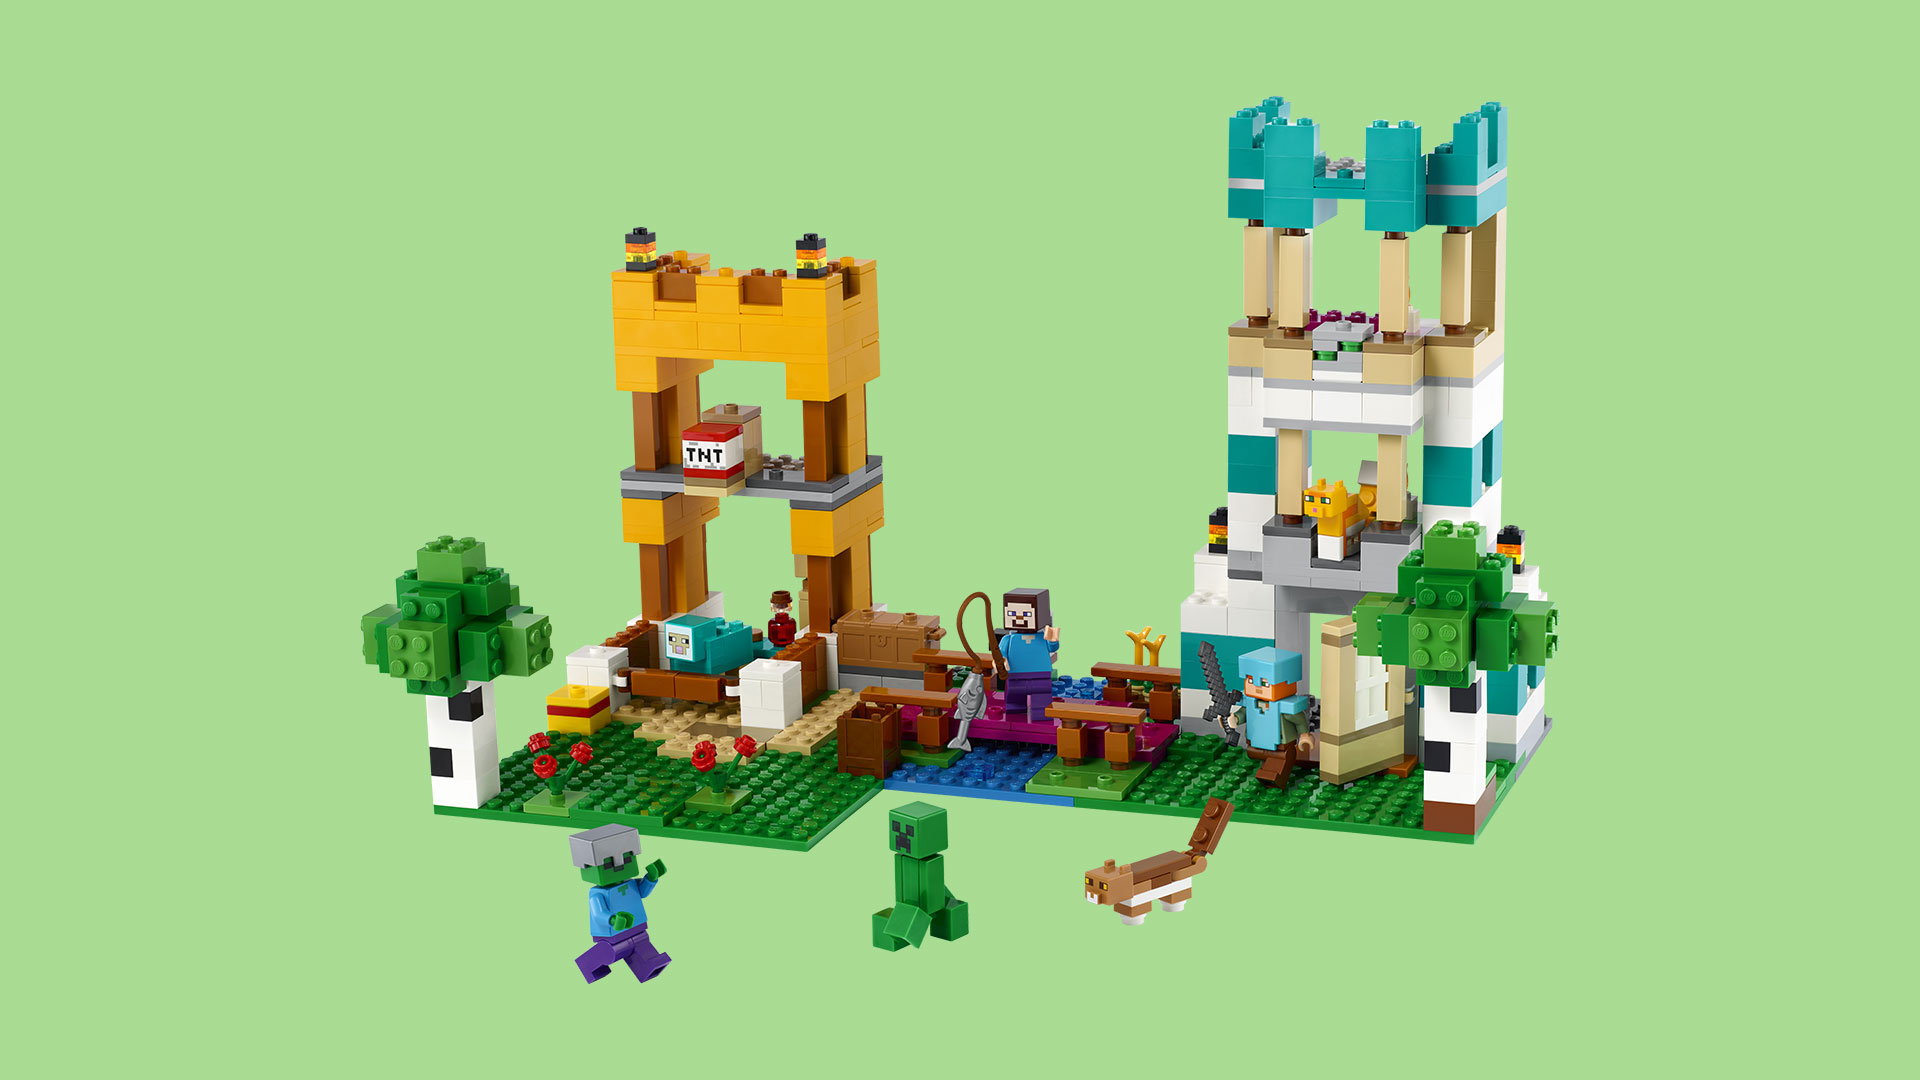 Vrhněte se do kostičkovaného dobrodružství s novými stavebnicemi LEGO Minecraft ilustrace3 LEGO MC